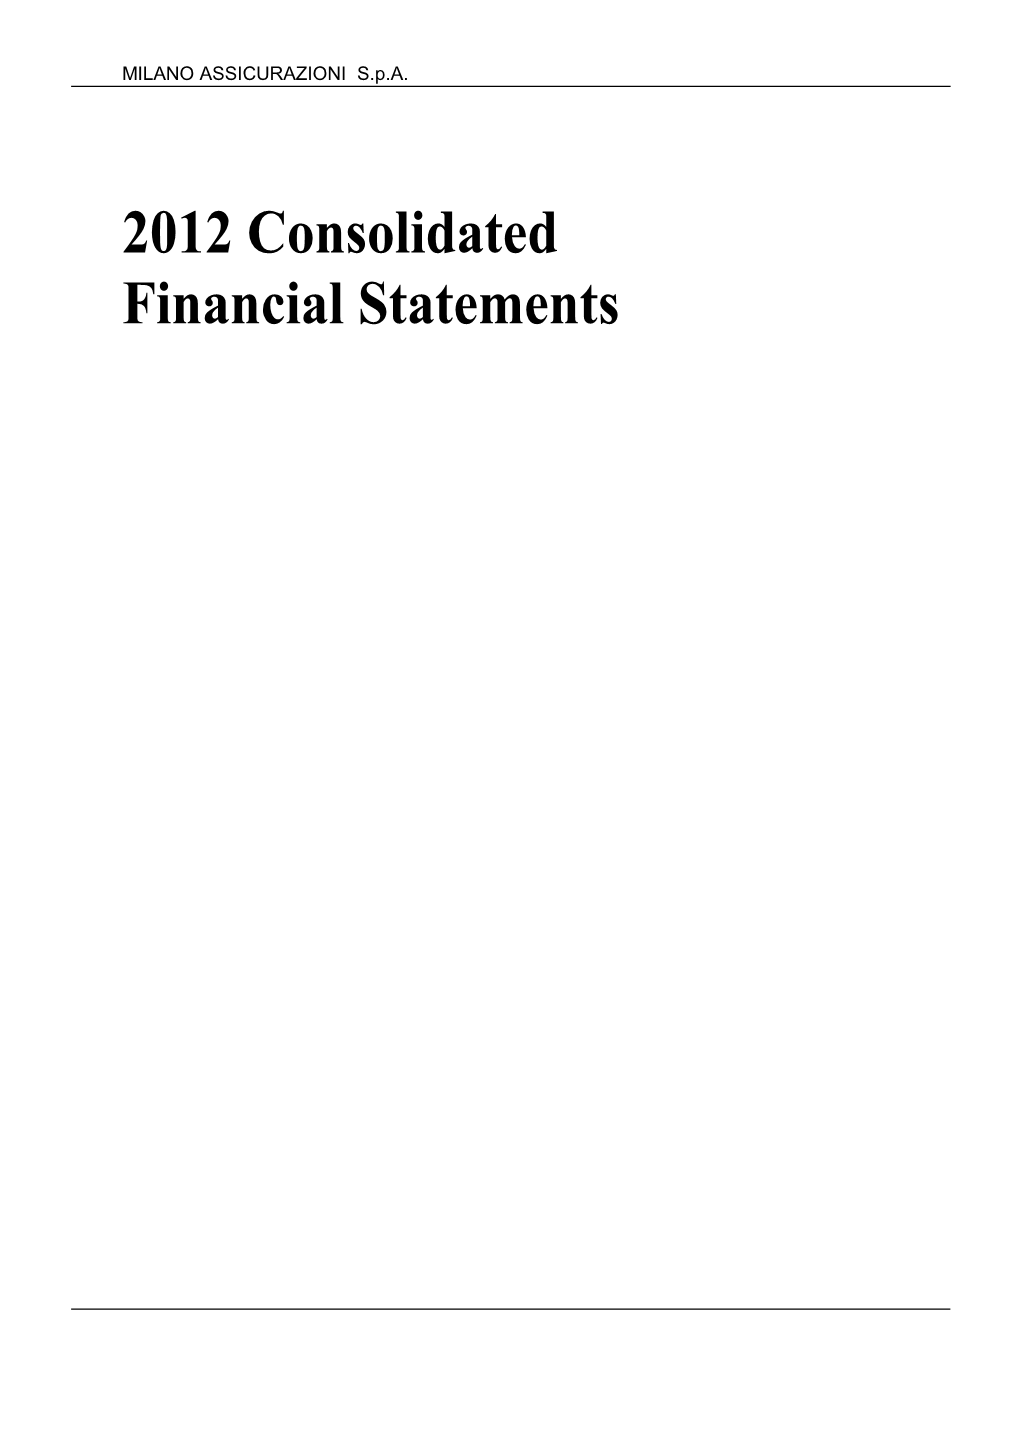 Milano Assicurazioni 2012 Consolidated Financial